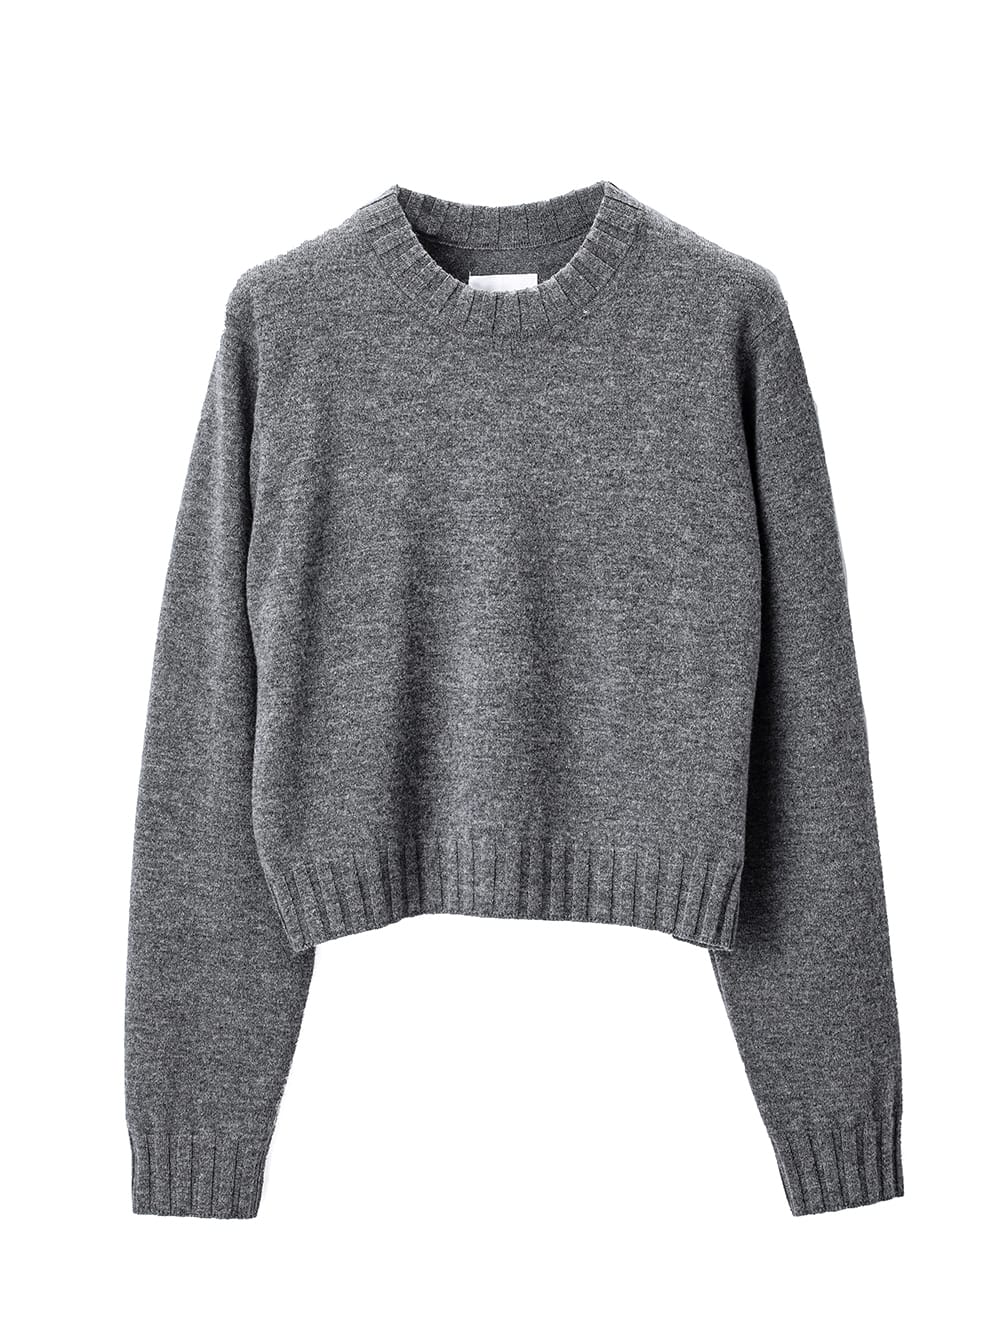 5,599円lambs wool cropped sweater